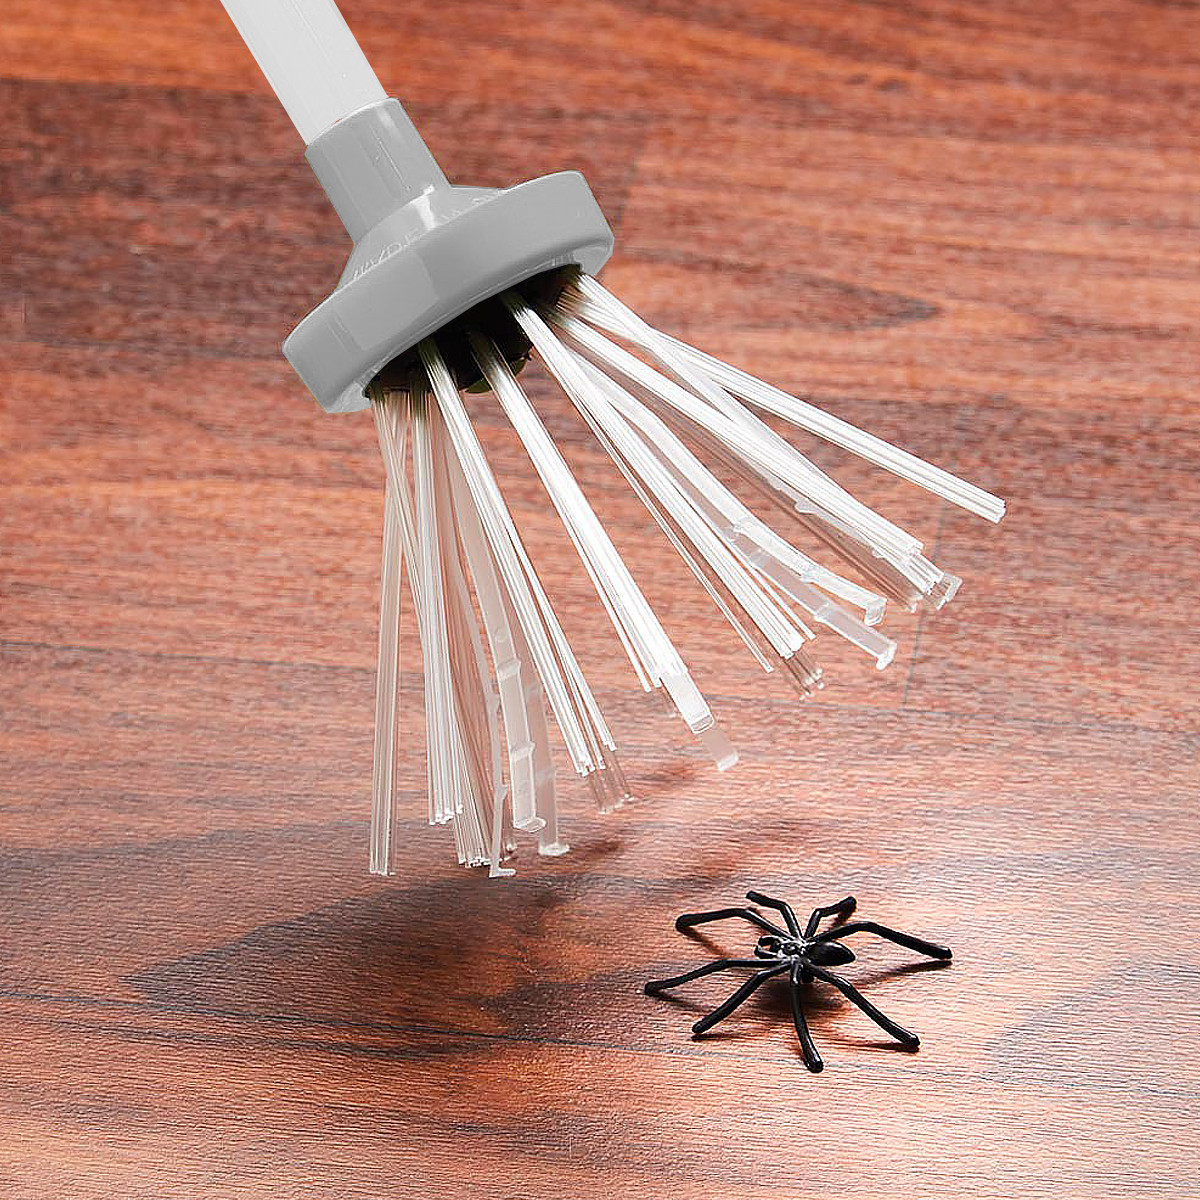 Spider Catcher - Attrape Araignée à 13,90€ - Achat cadeau pour écolo - Idée  cadeau femme homme